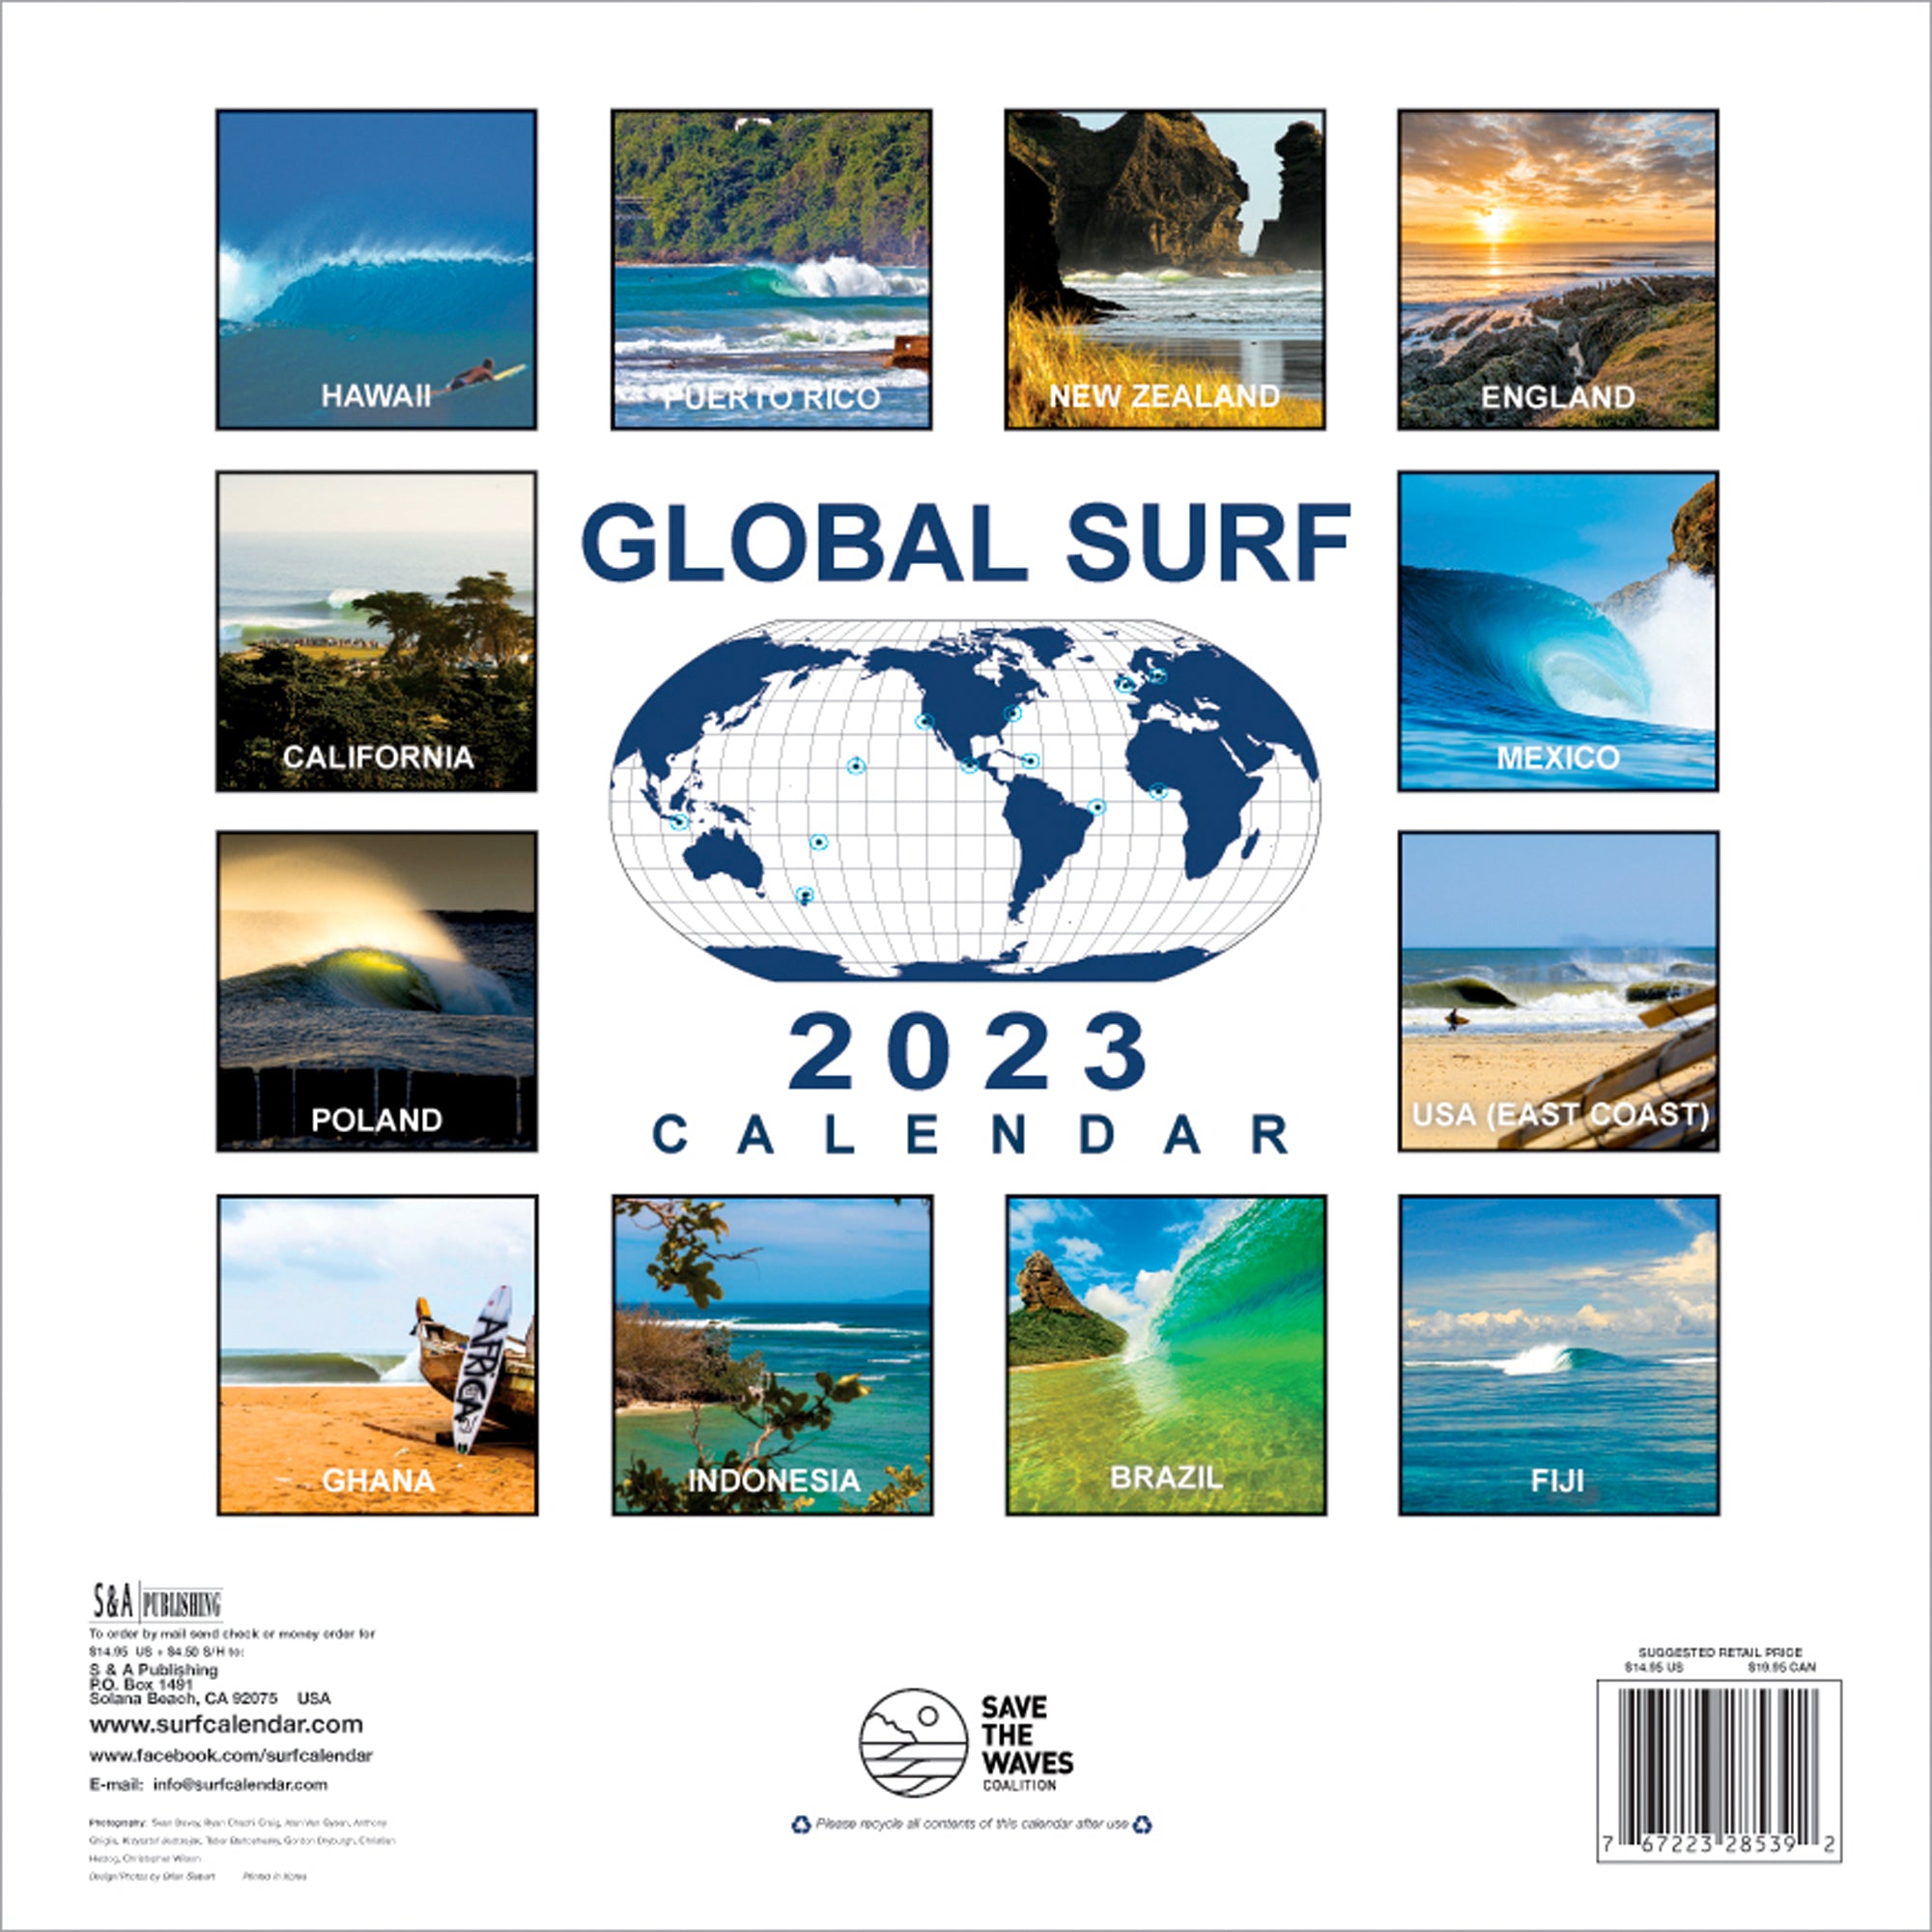 2023 Global Surf Calendar